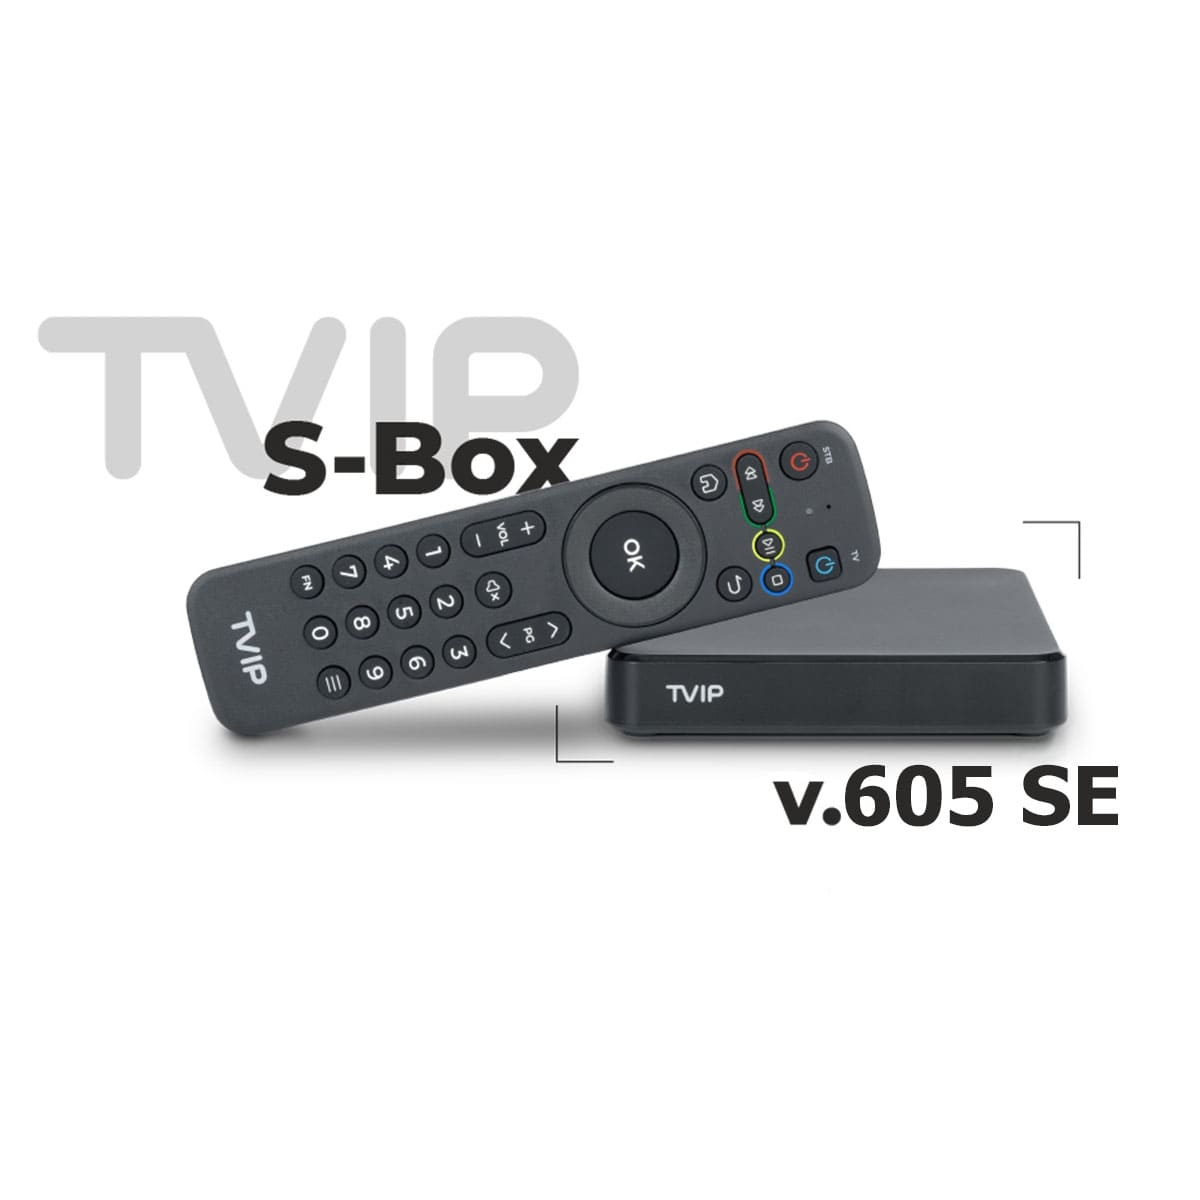 v.605 SE 8 S-Box GB TVIP